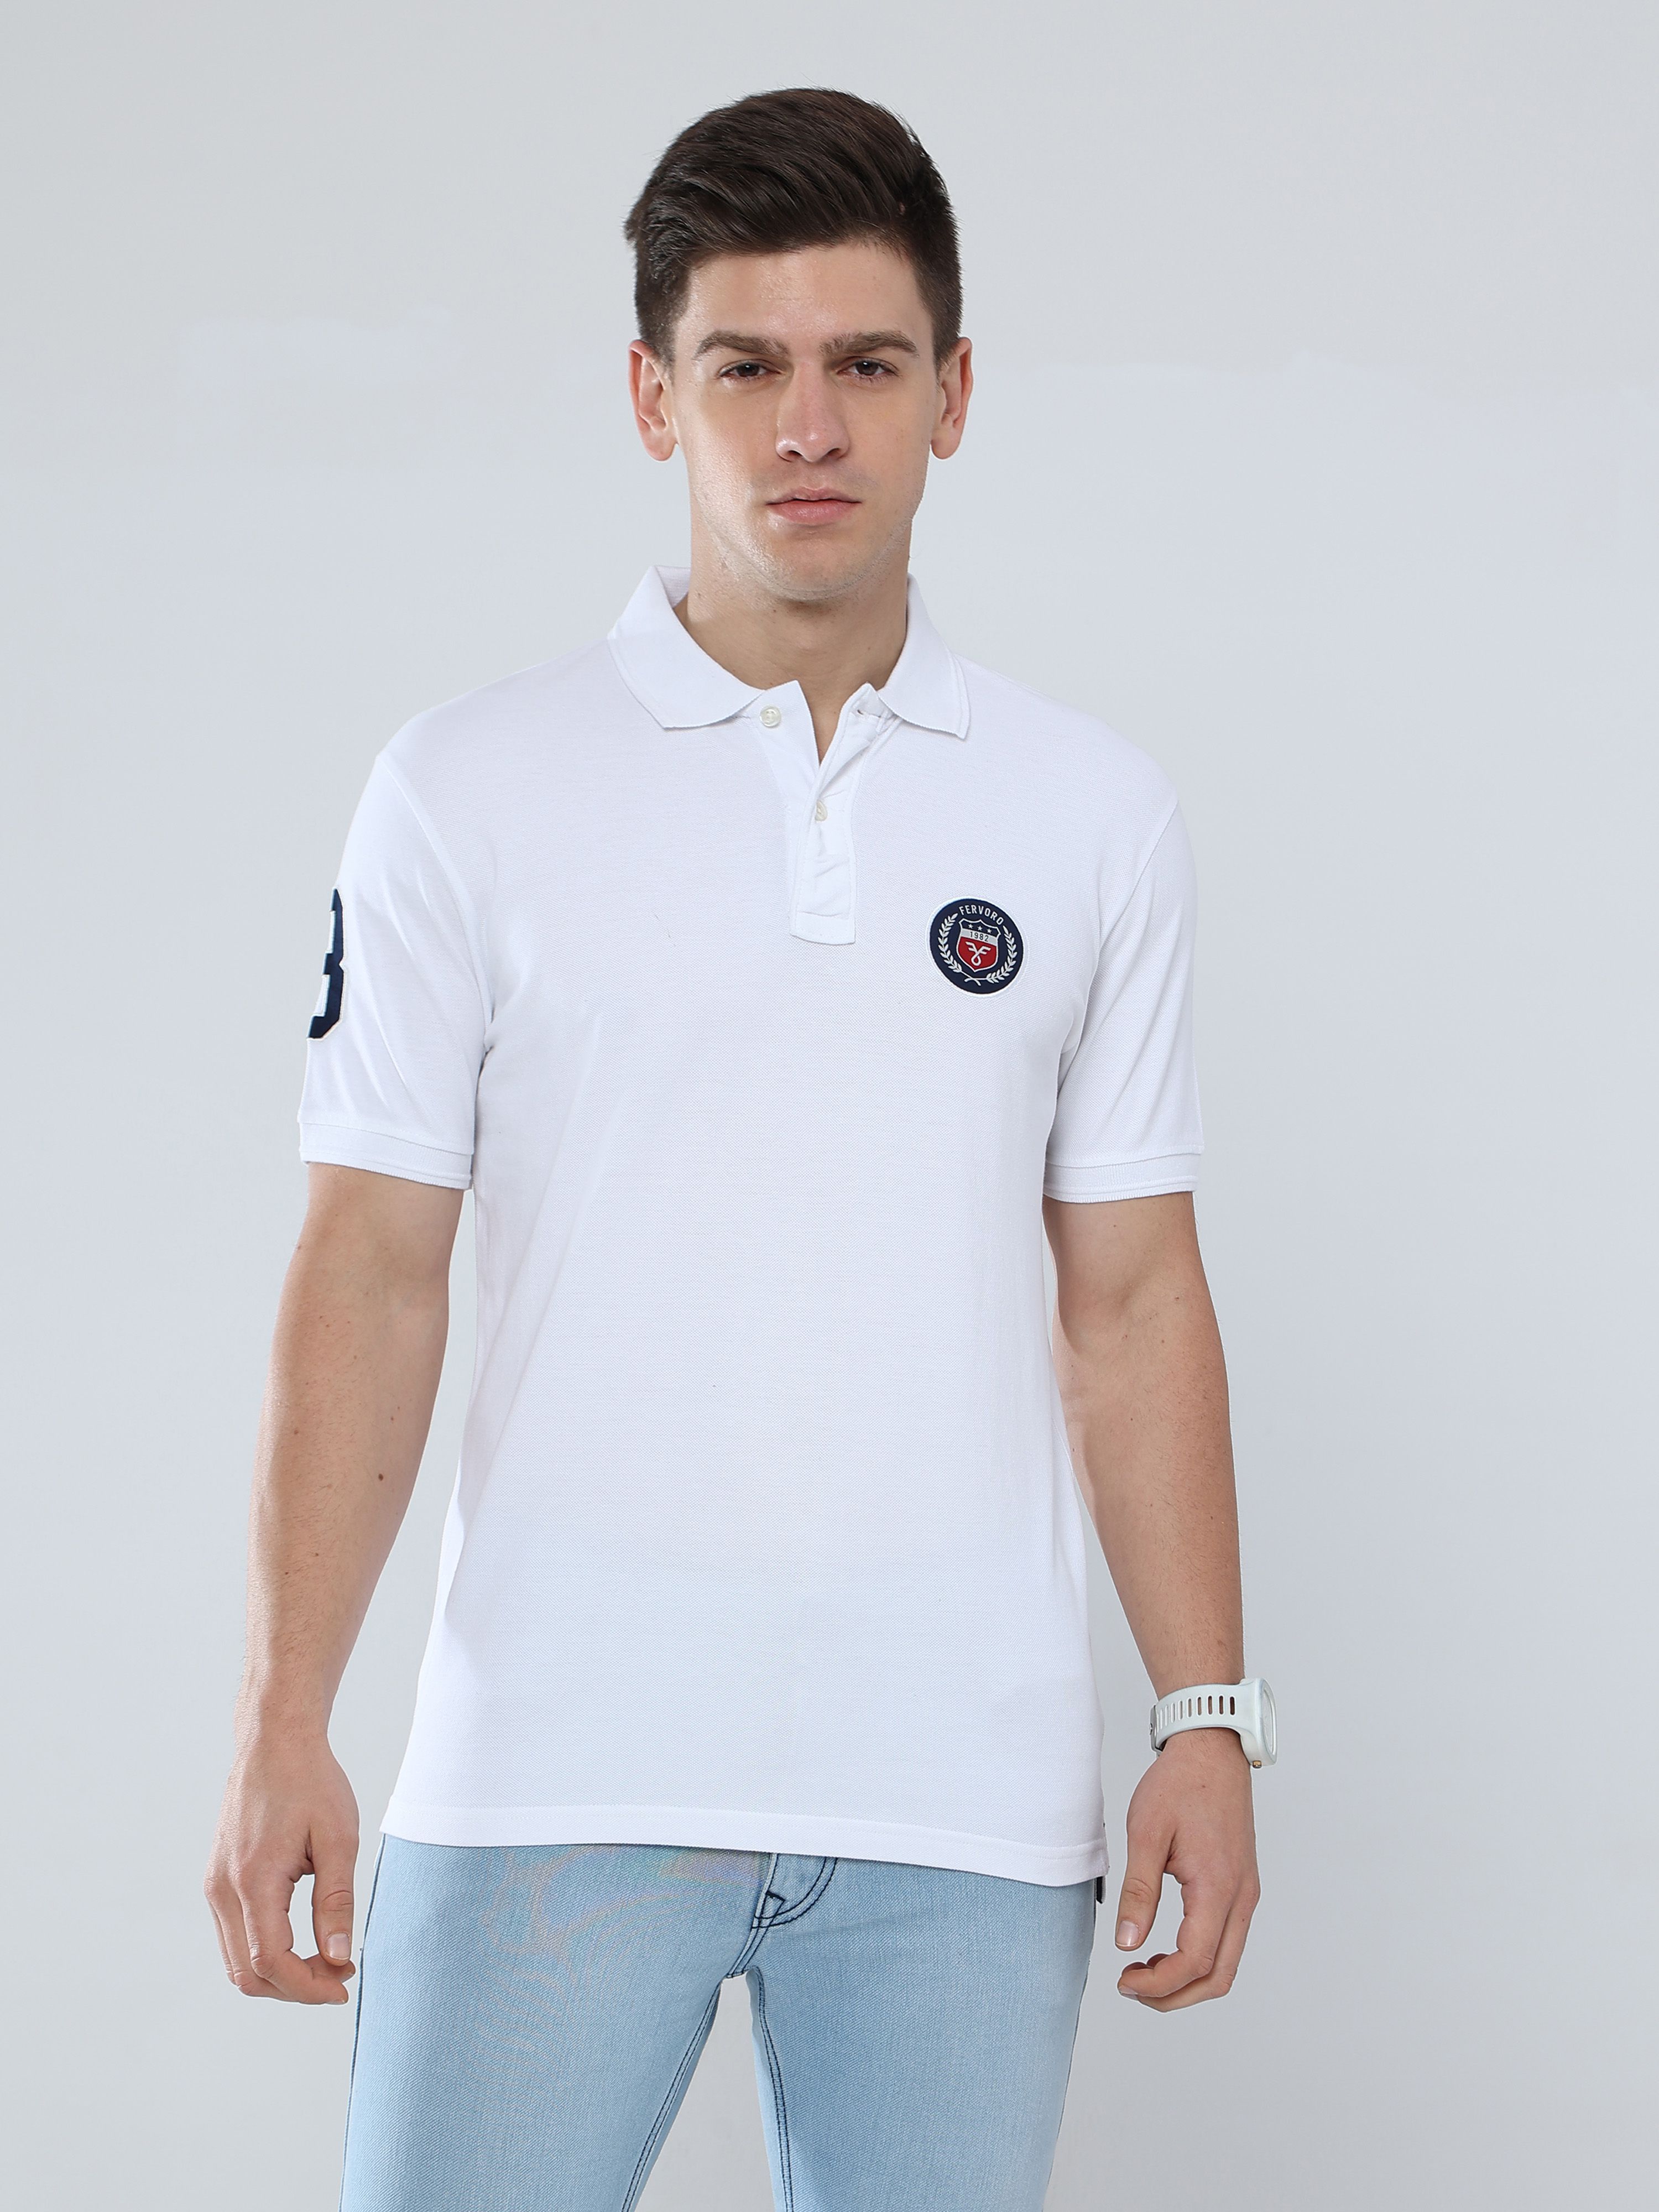     			FERVORO Cotton Blend Regular Fit Self Design Half Sleeves Men's Polo T Shirt - White ( Pack of 1 )